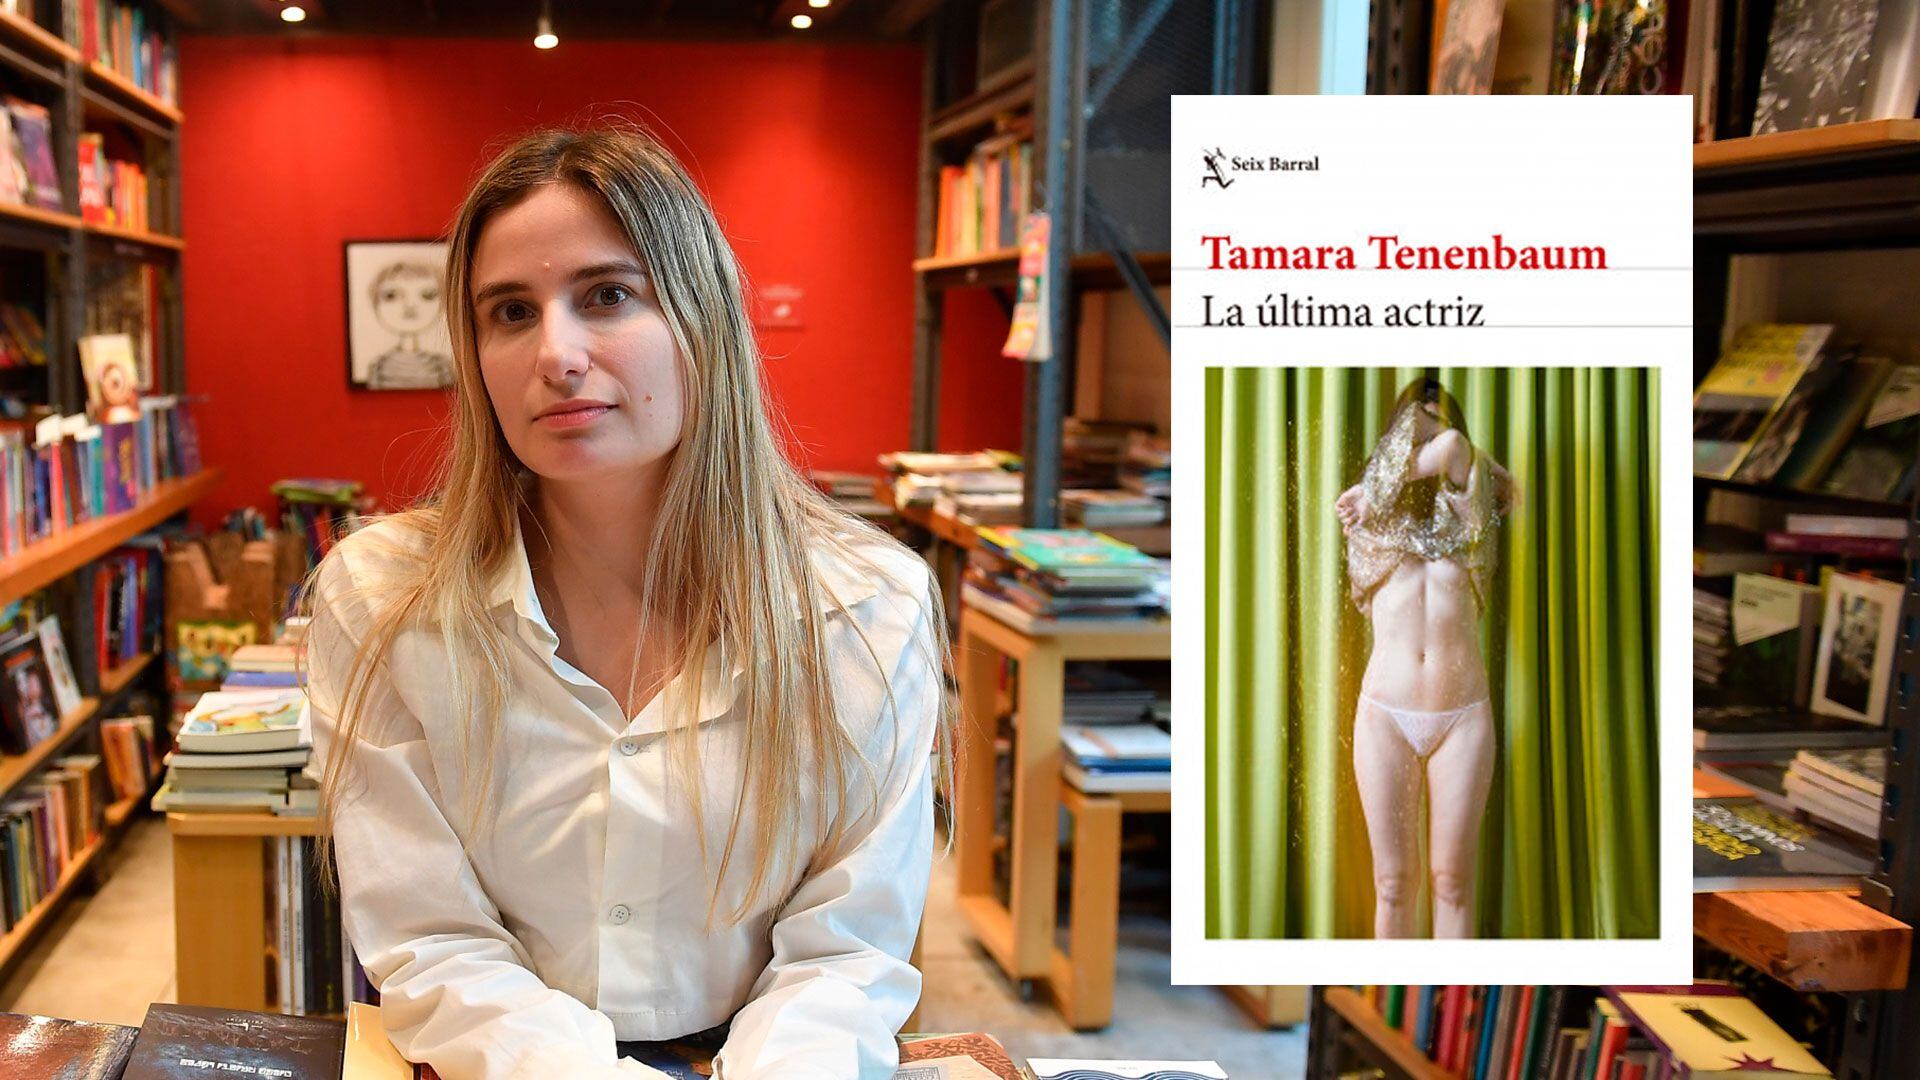 Tamara Tenenbaum